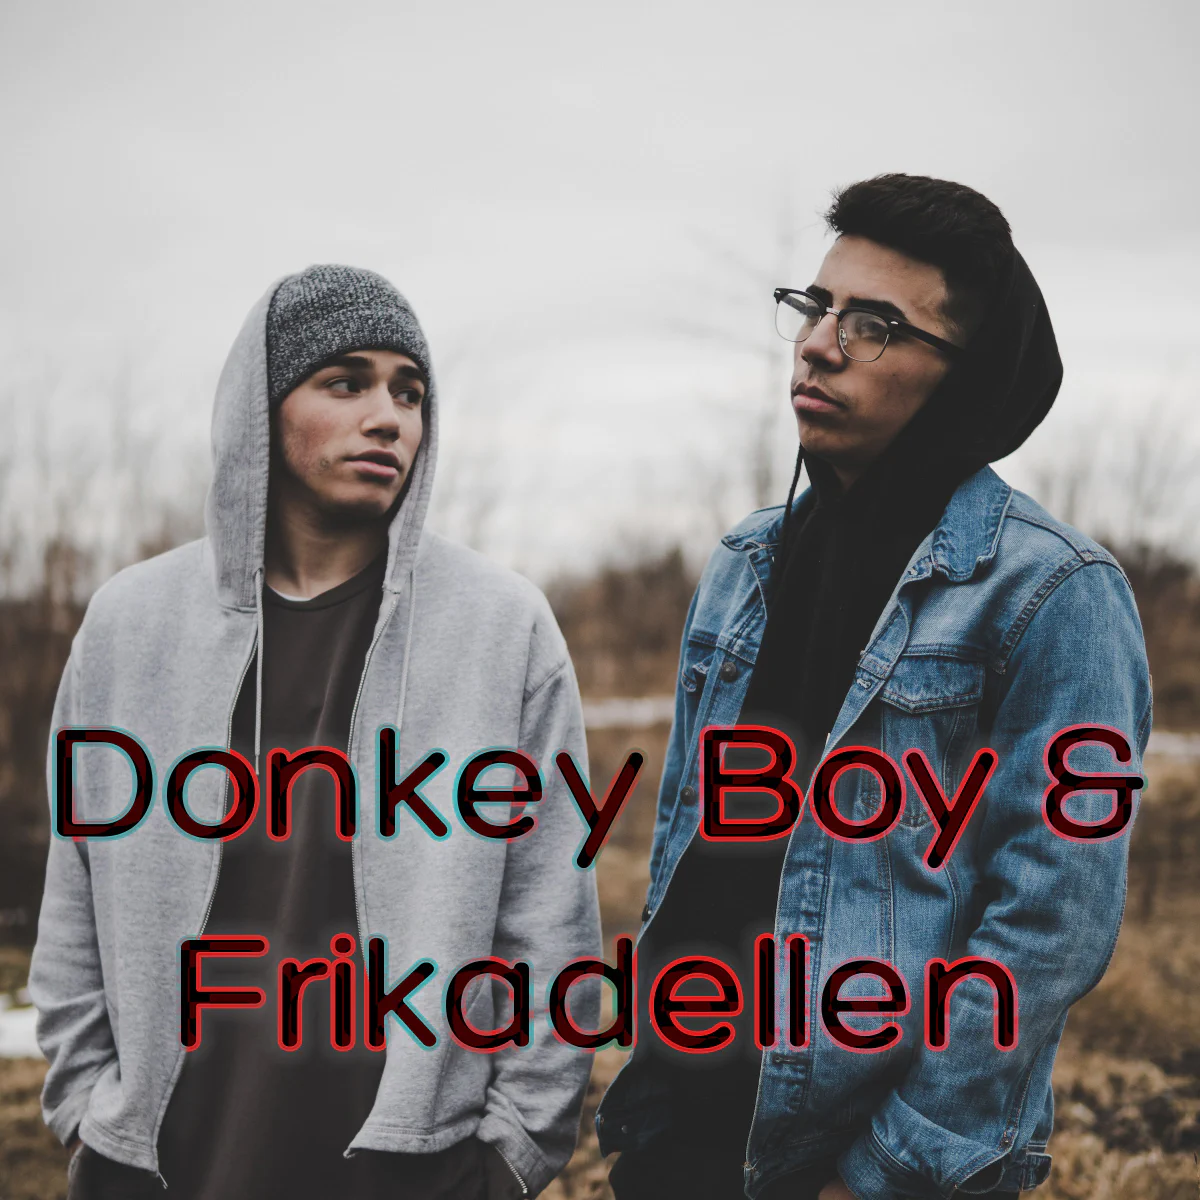 Donkey Boy & Frikadellen gør ondt at lytte til